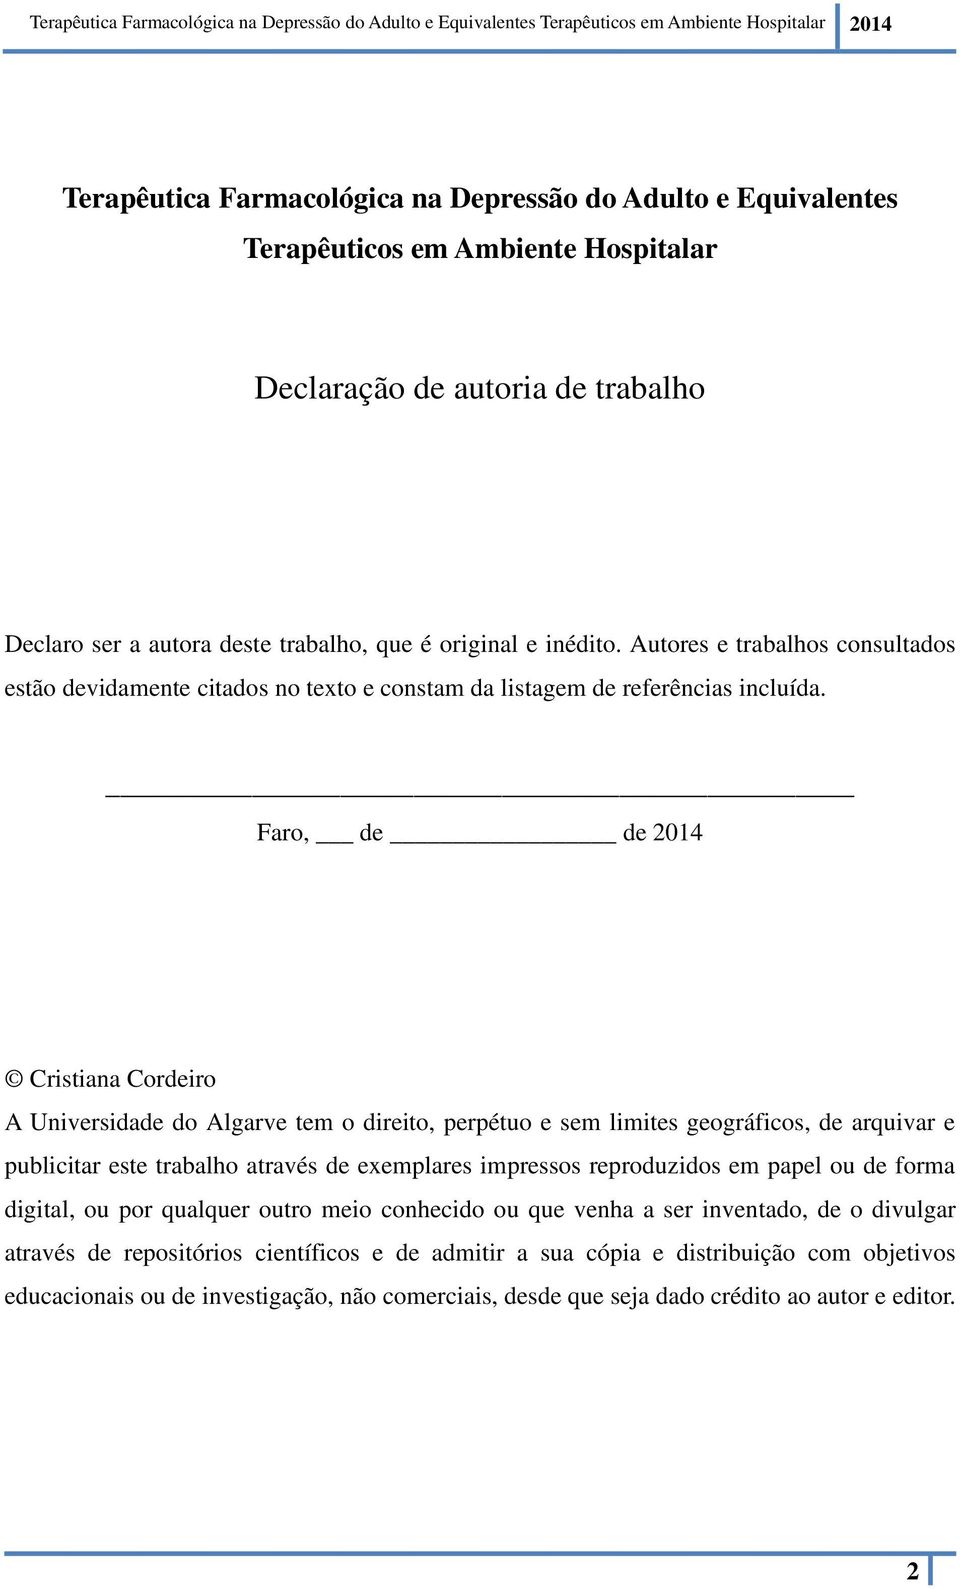 Faro, de de 2014 Cristiana Cordeiro A Universidade do Algarve tem o direito, perpétuo e sem limites geográficos, de arquivar e publicitar este trabalho através de exemplares impressos reproduzidos em